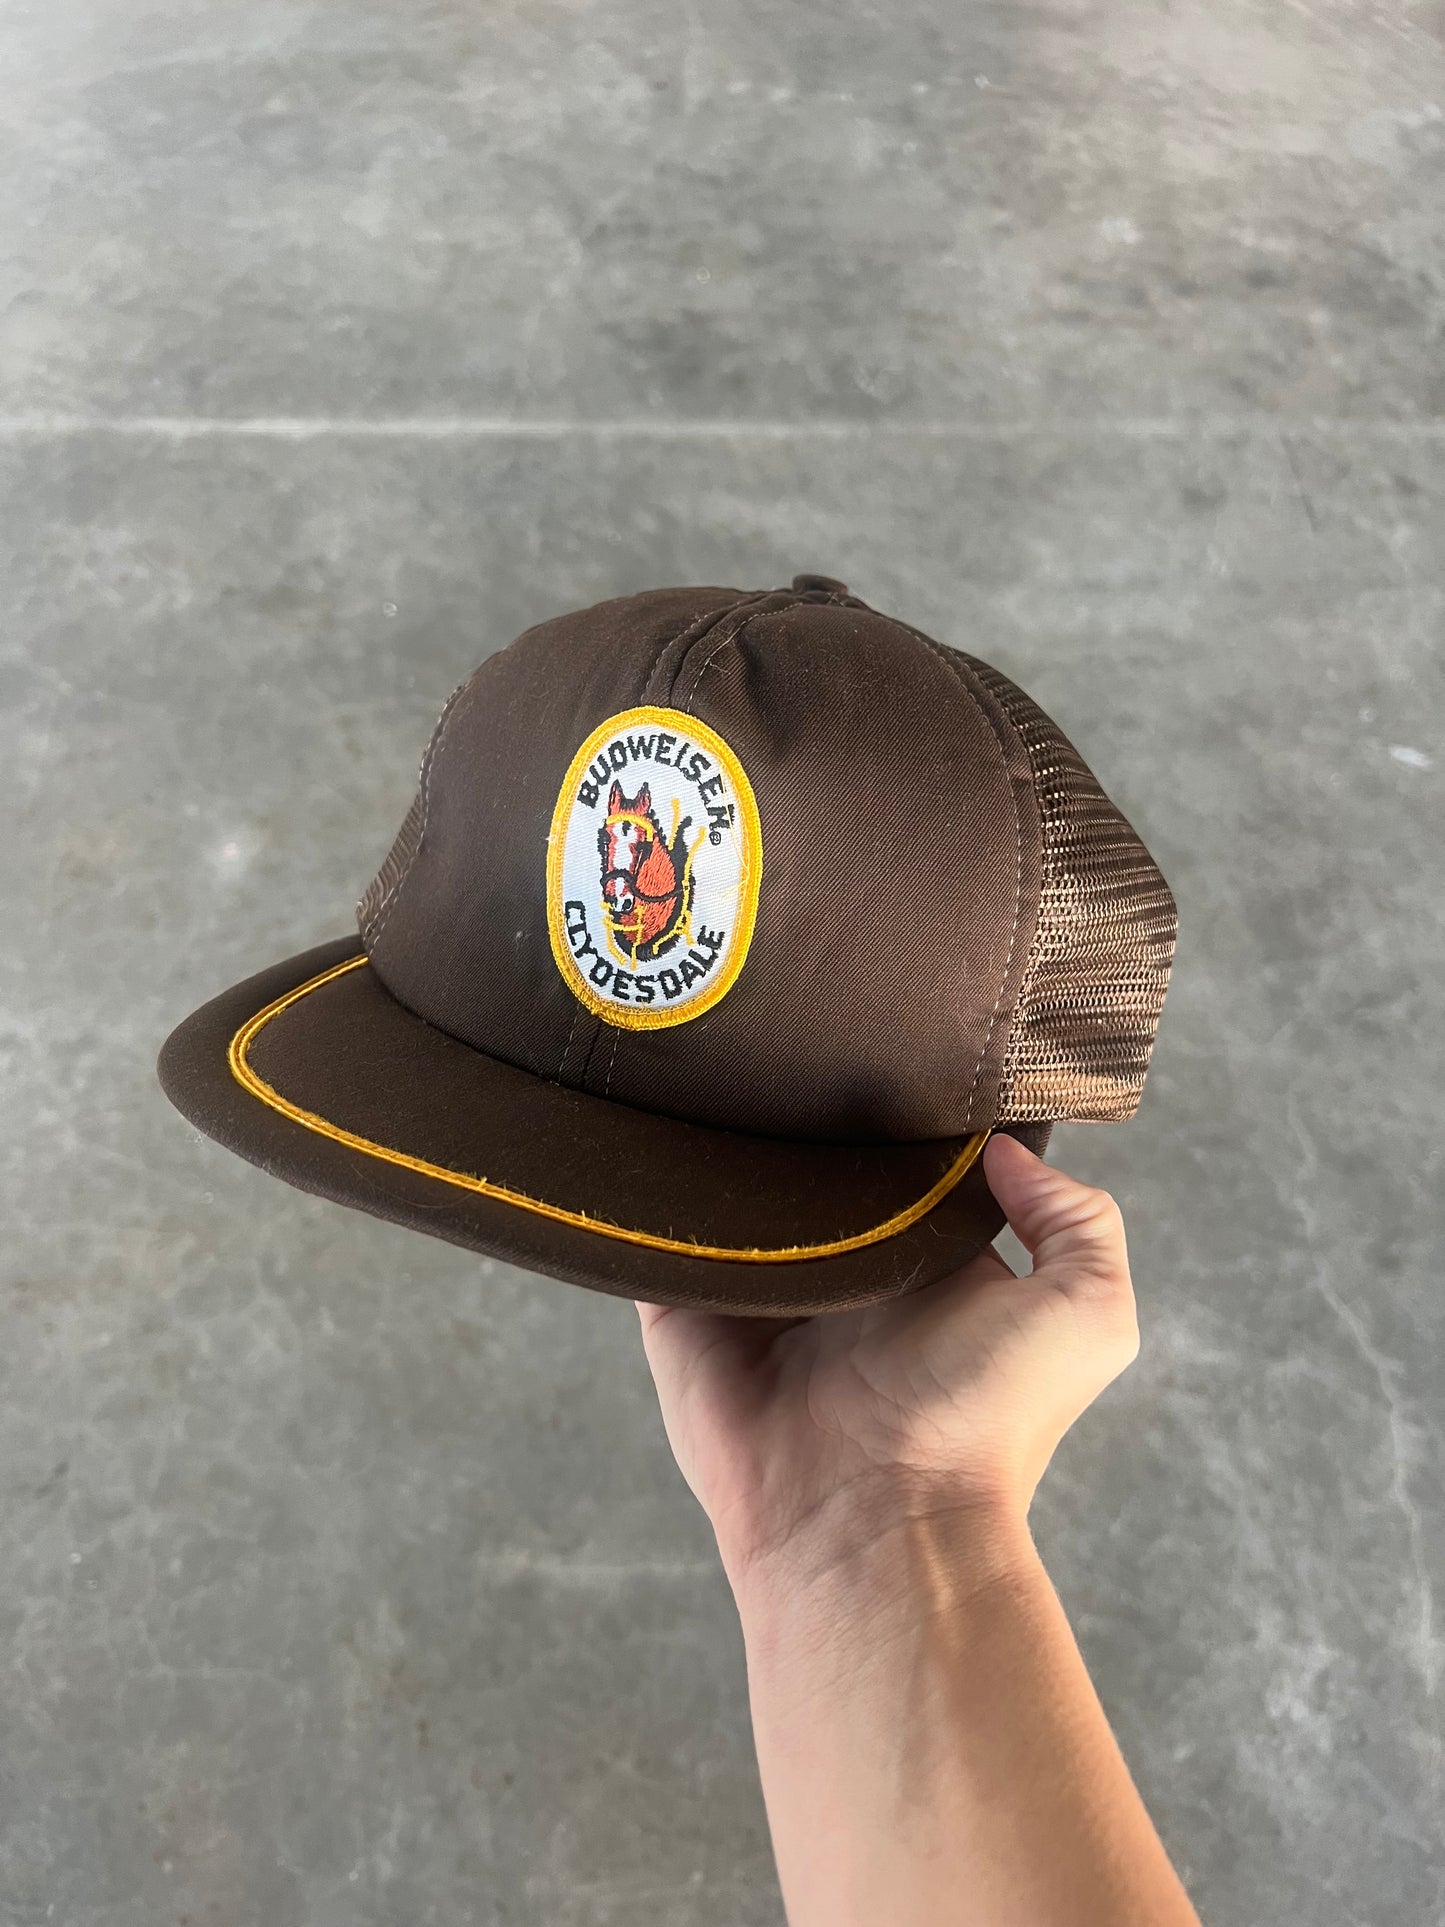 Vintage Adjustable Budweiser Hat